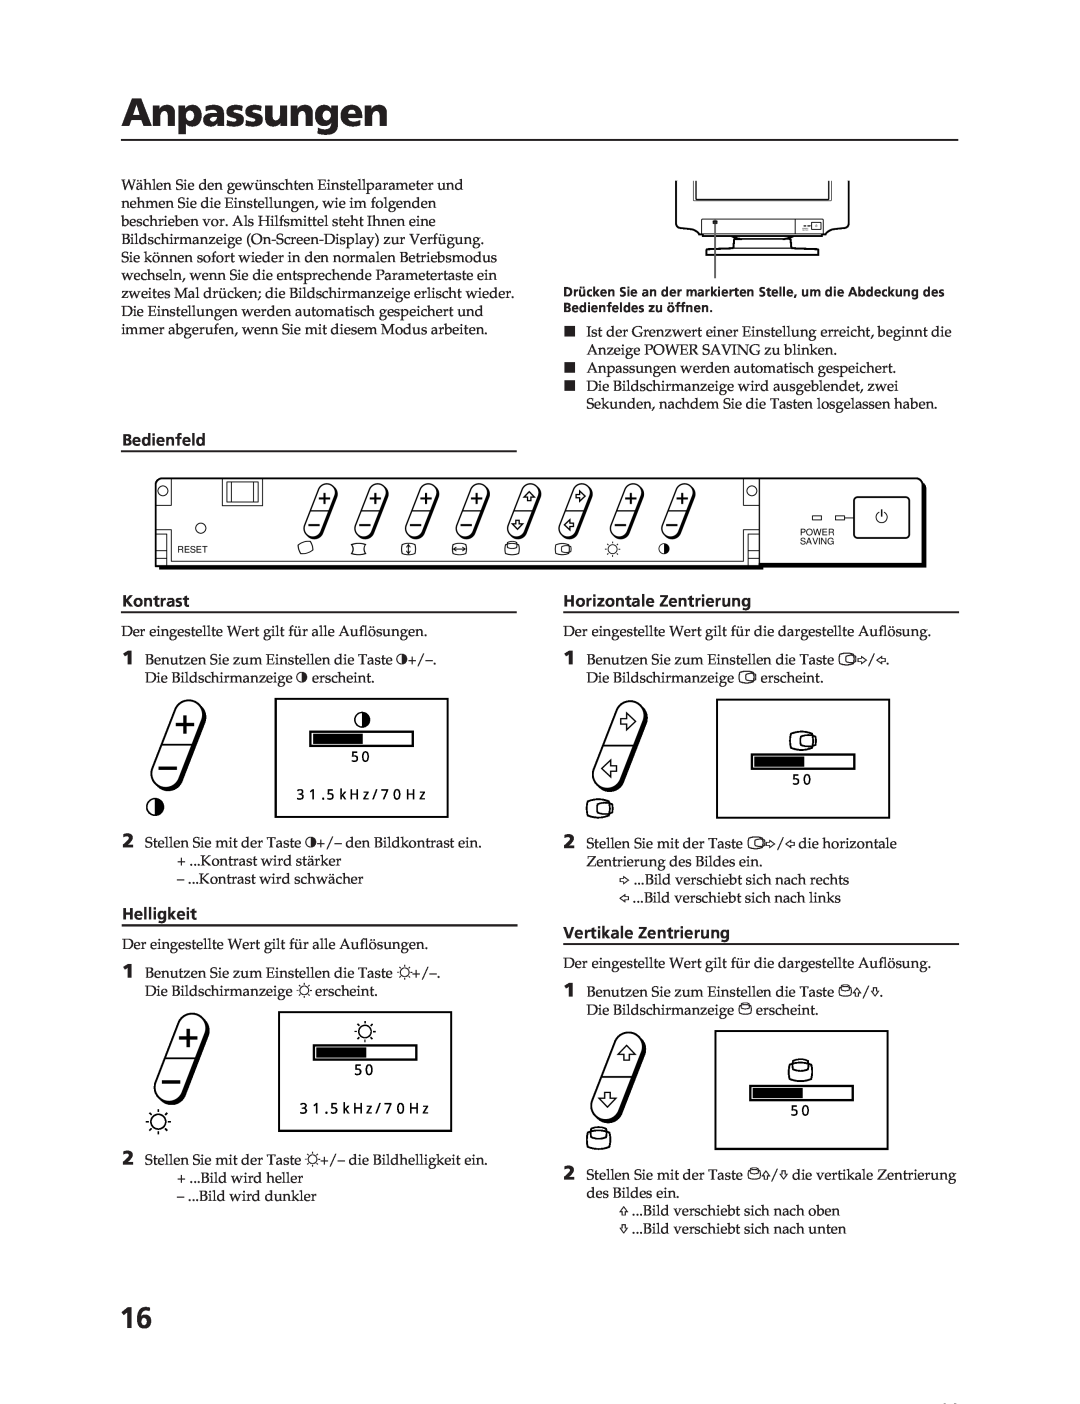 Sony CPD-17F03 manual Anpassungen, Bedienfeld, Kontrast, Helligkeit, Horizontale Zentrierung, Vertikale Zentrierung 